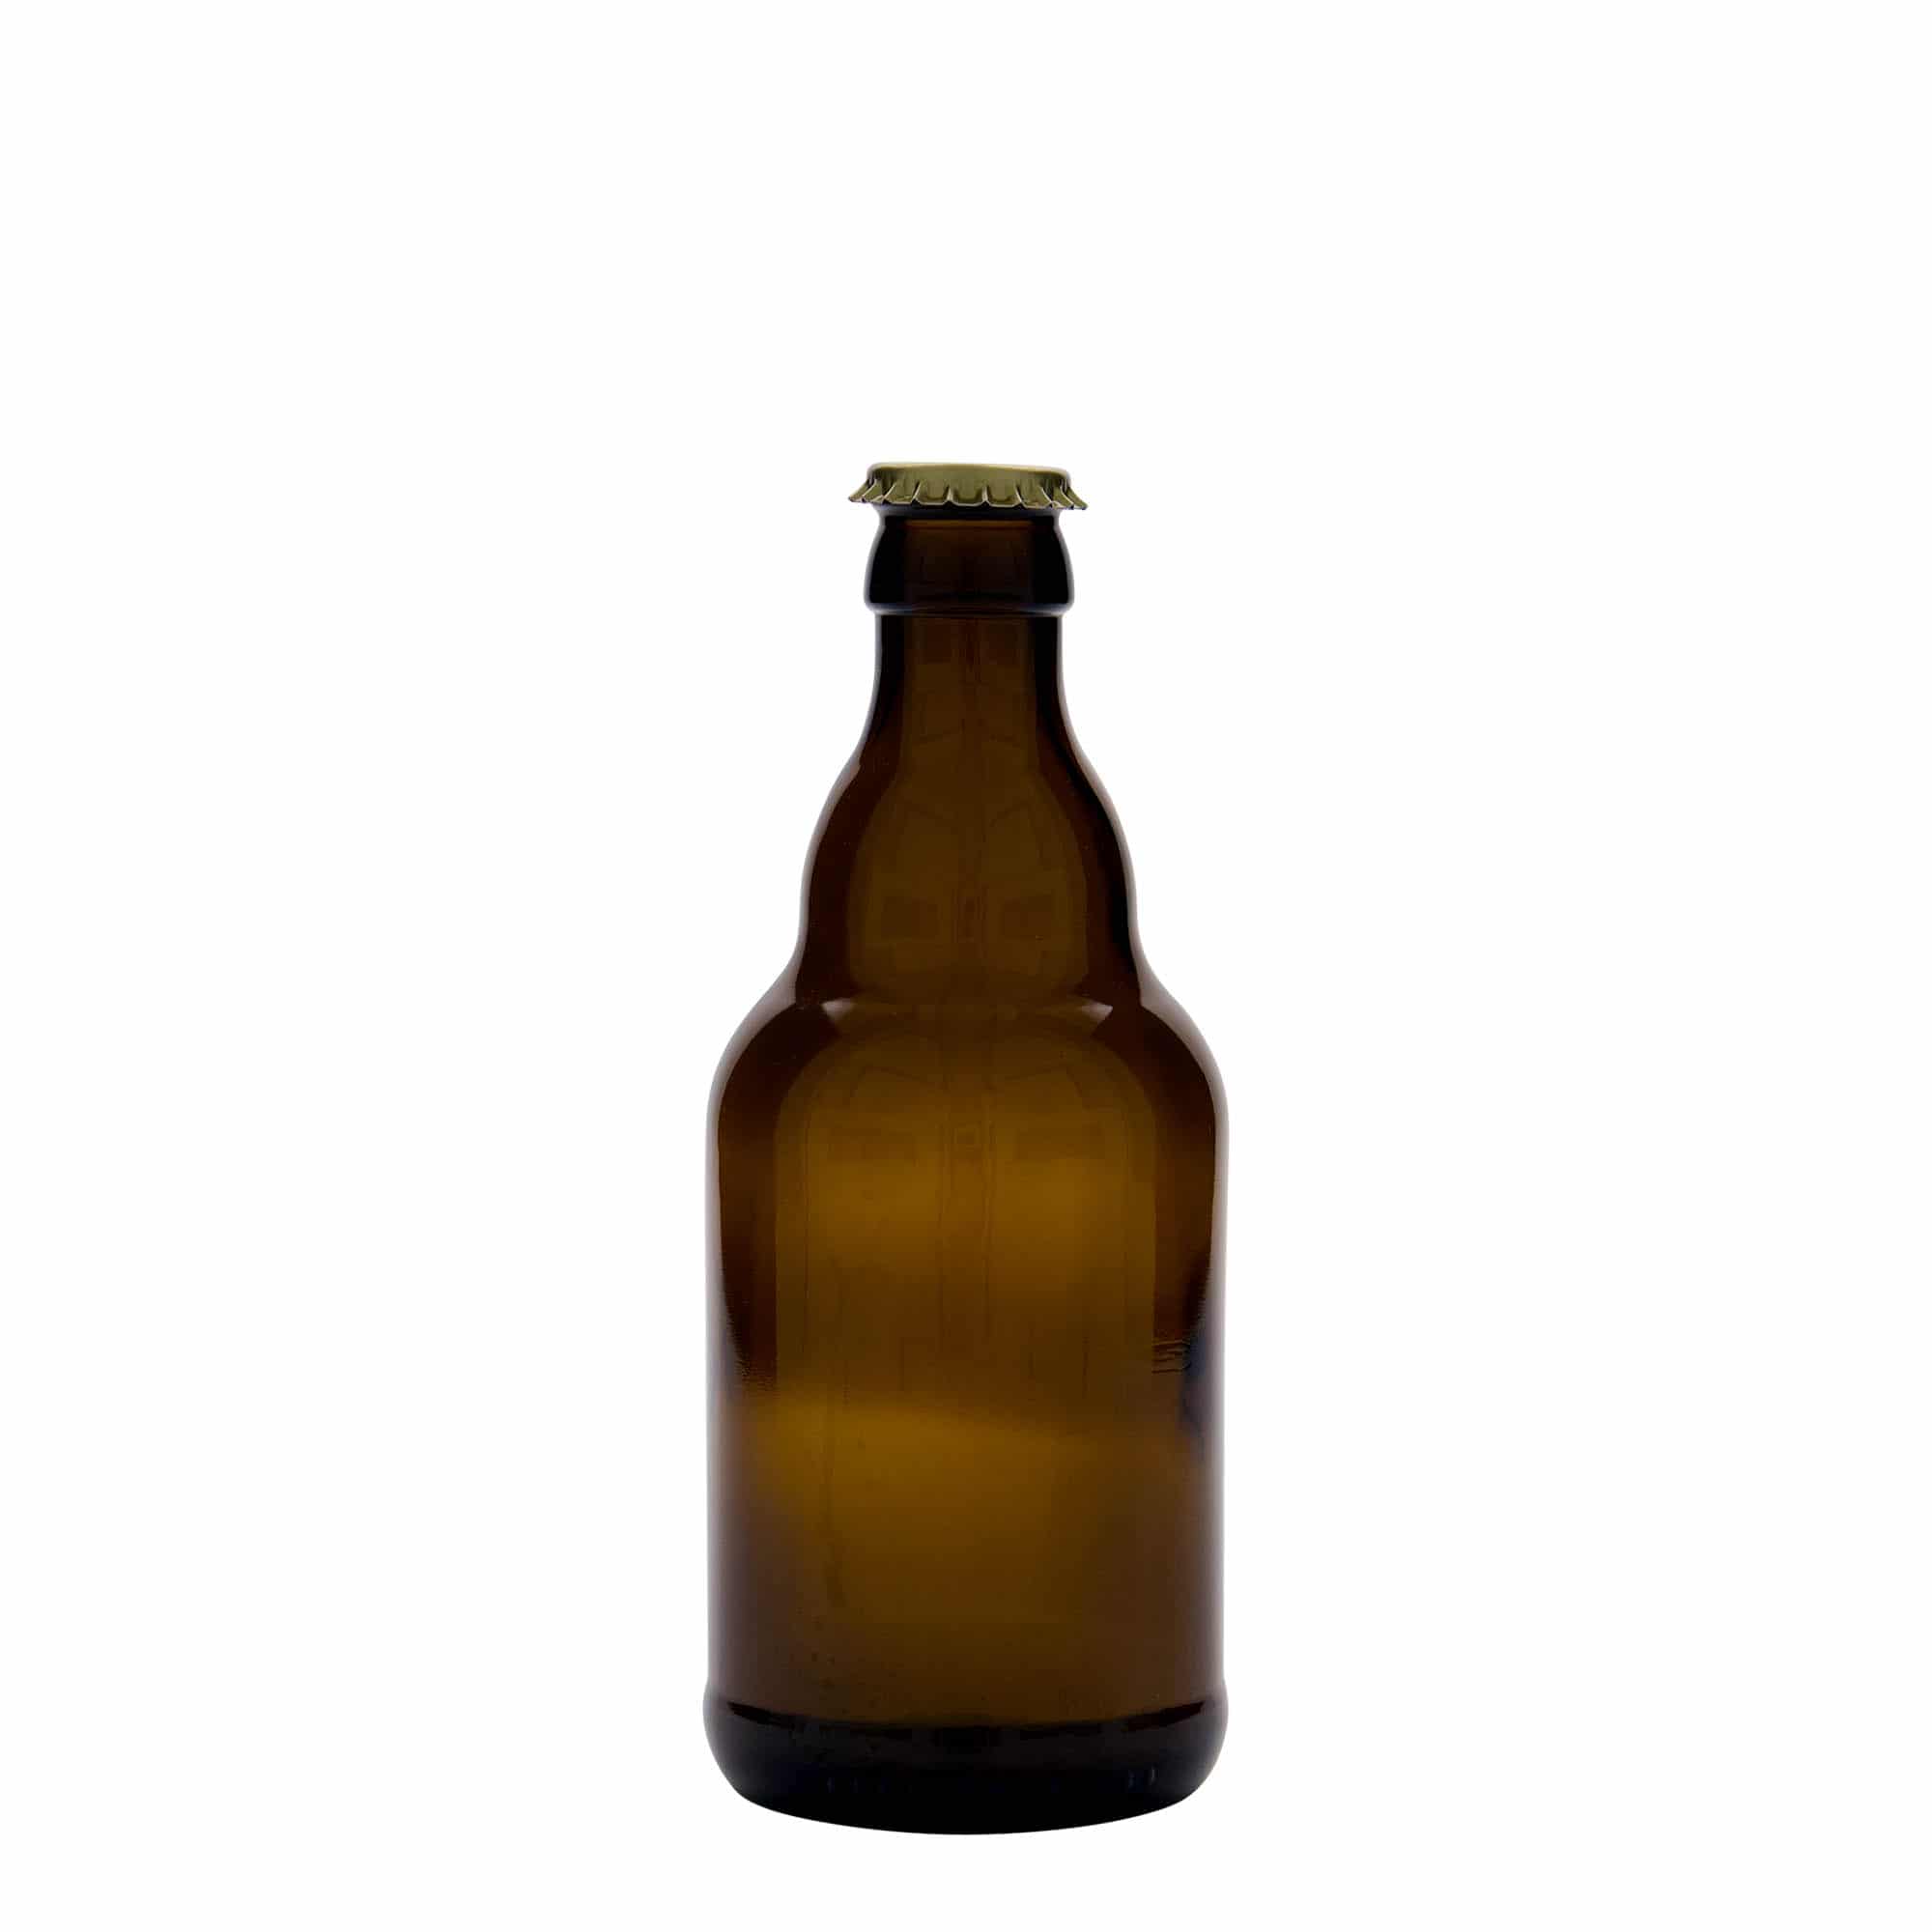 330 ml beer bottle 'Steinie', glass, brown, closure: crown caps